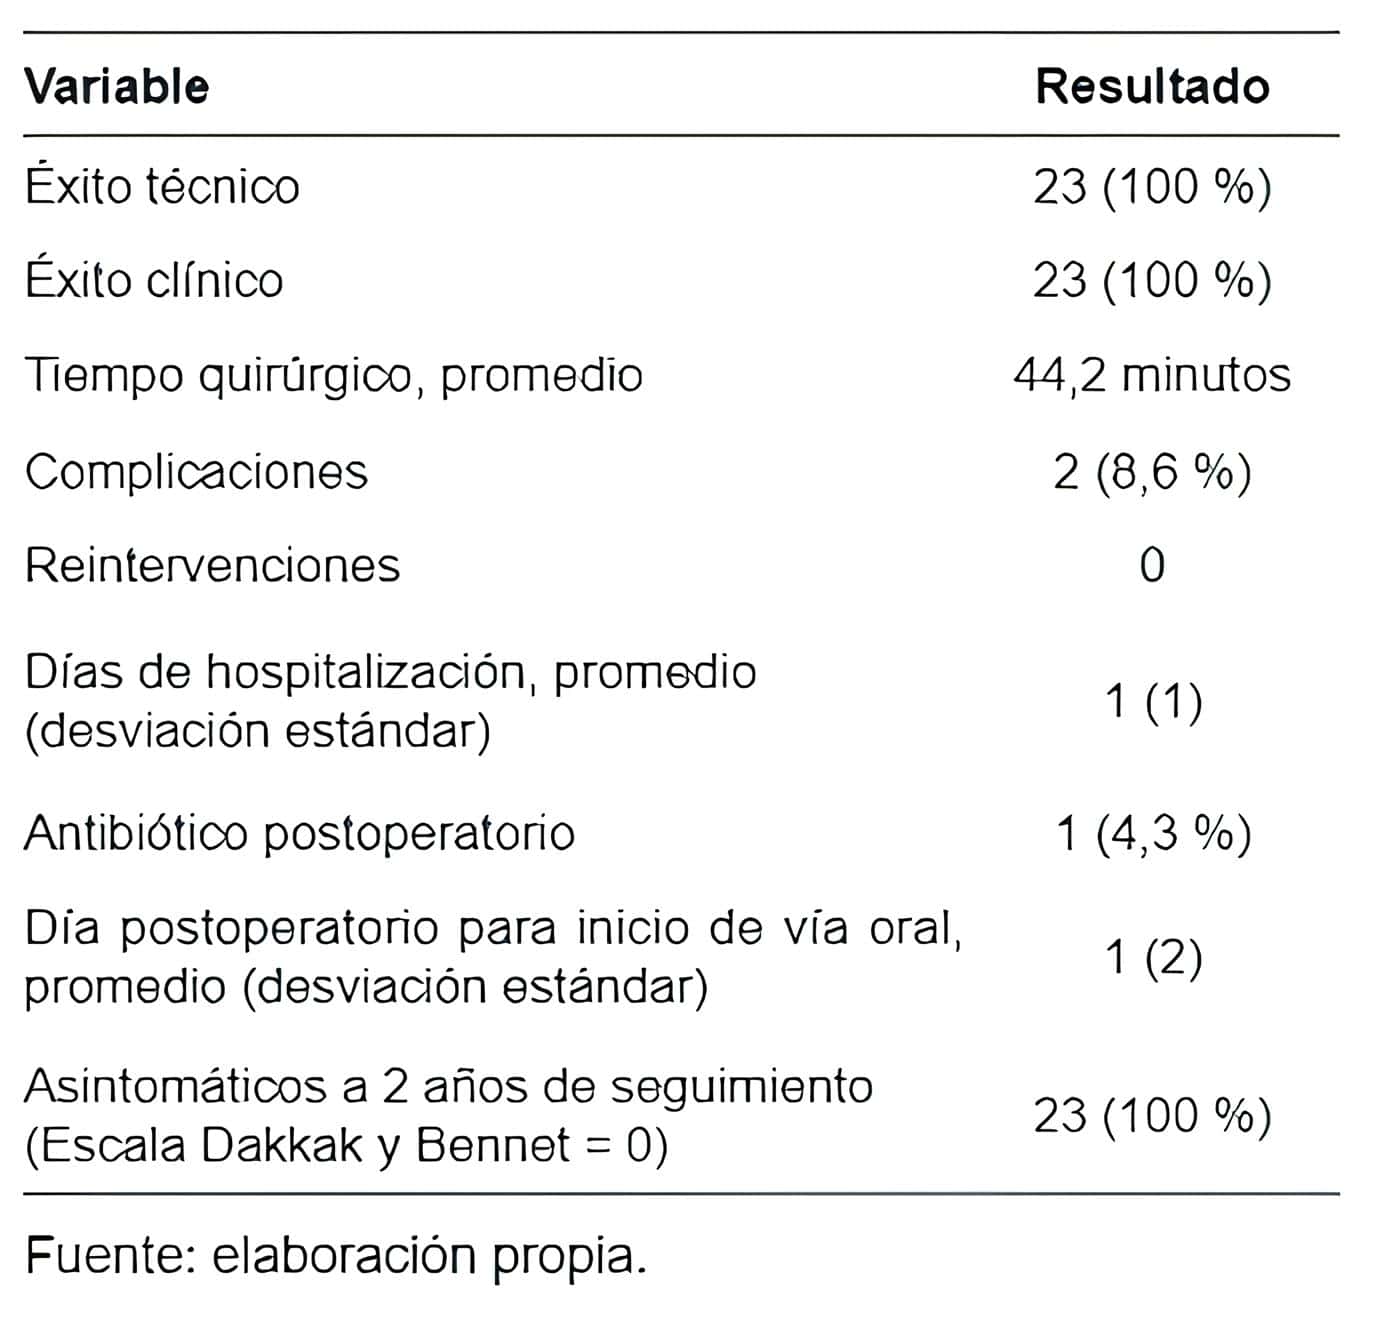 Resultados  postoperatorios  de  pacientes  tratados con Z-POEM